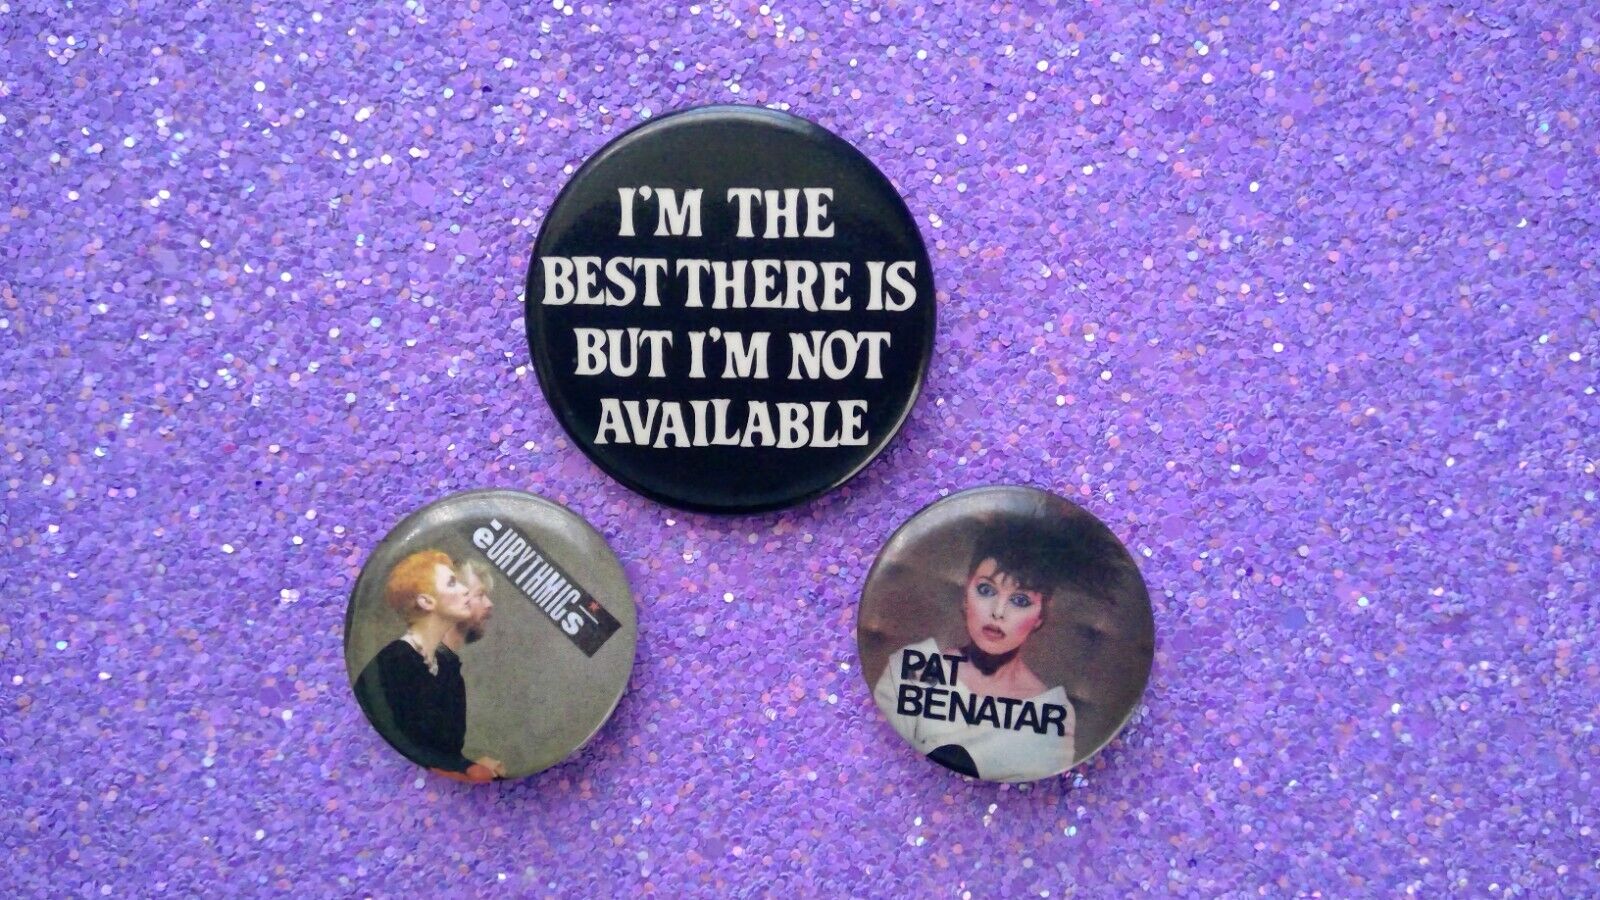 80s Music Pat Benatar Eurythmics Funny Pinback Buttons Lot of 3 Collectible Rock